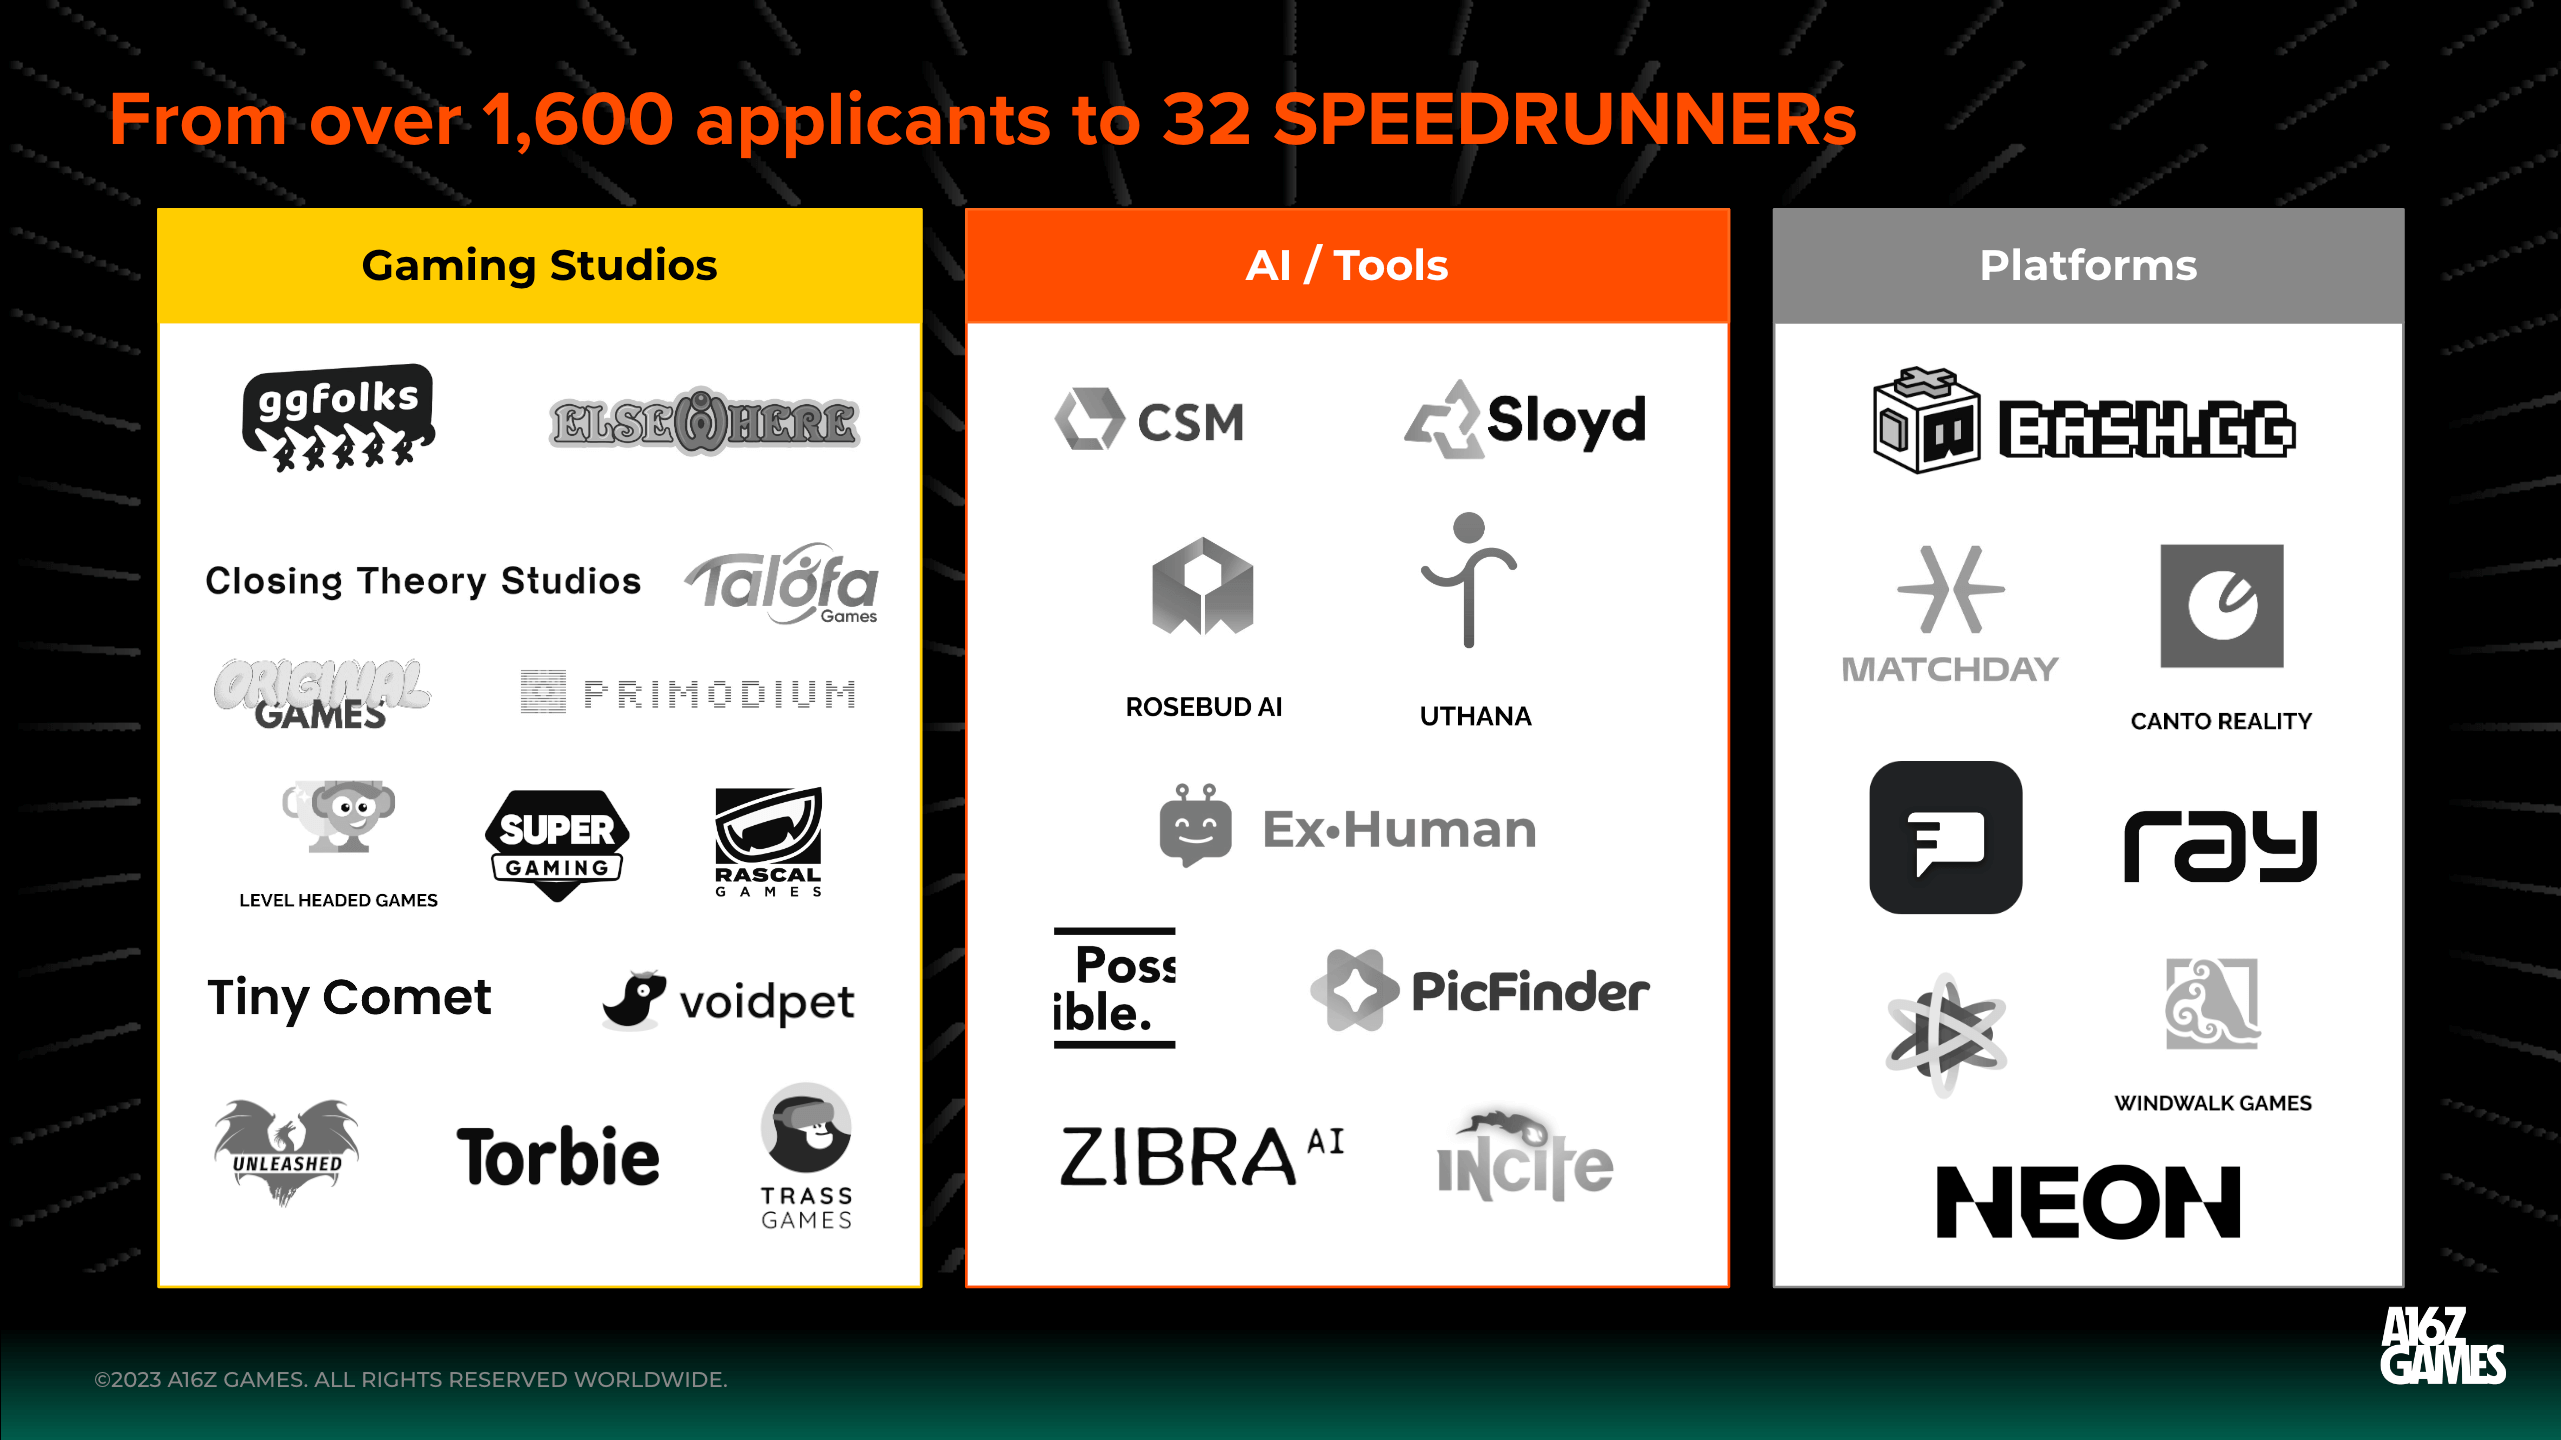 Announcing SPEEDRUN 2024: Accelerating Games x Tech